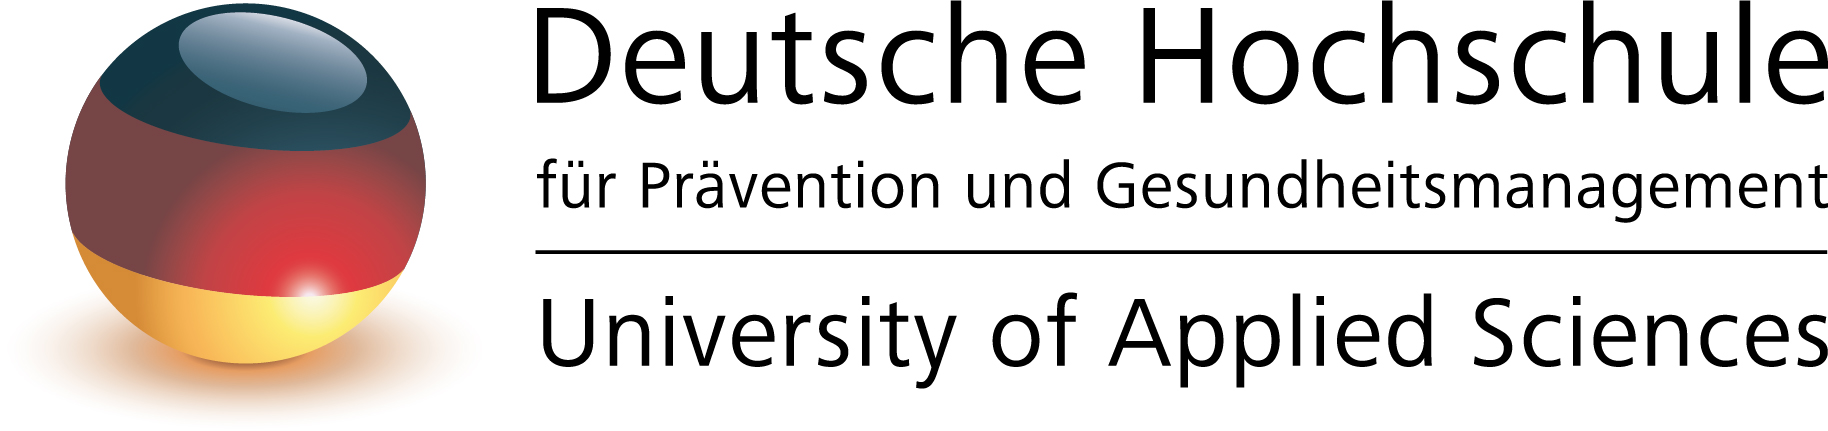 Deutsche Hochschule für Prävention und Gesundheitsmanagement-Studienzentrum Düsseldorf Logo